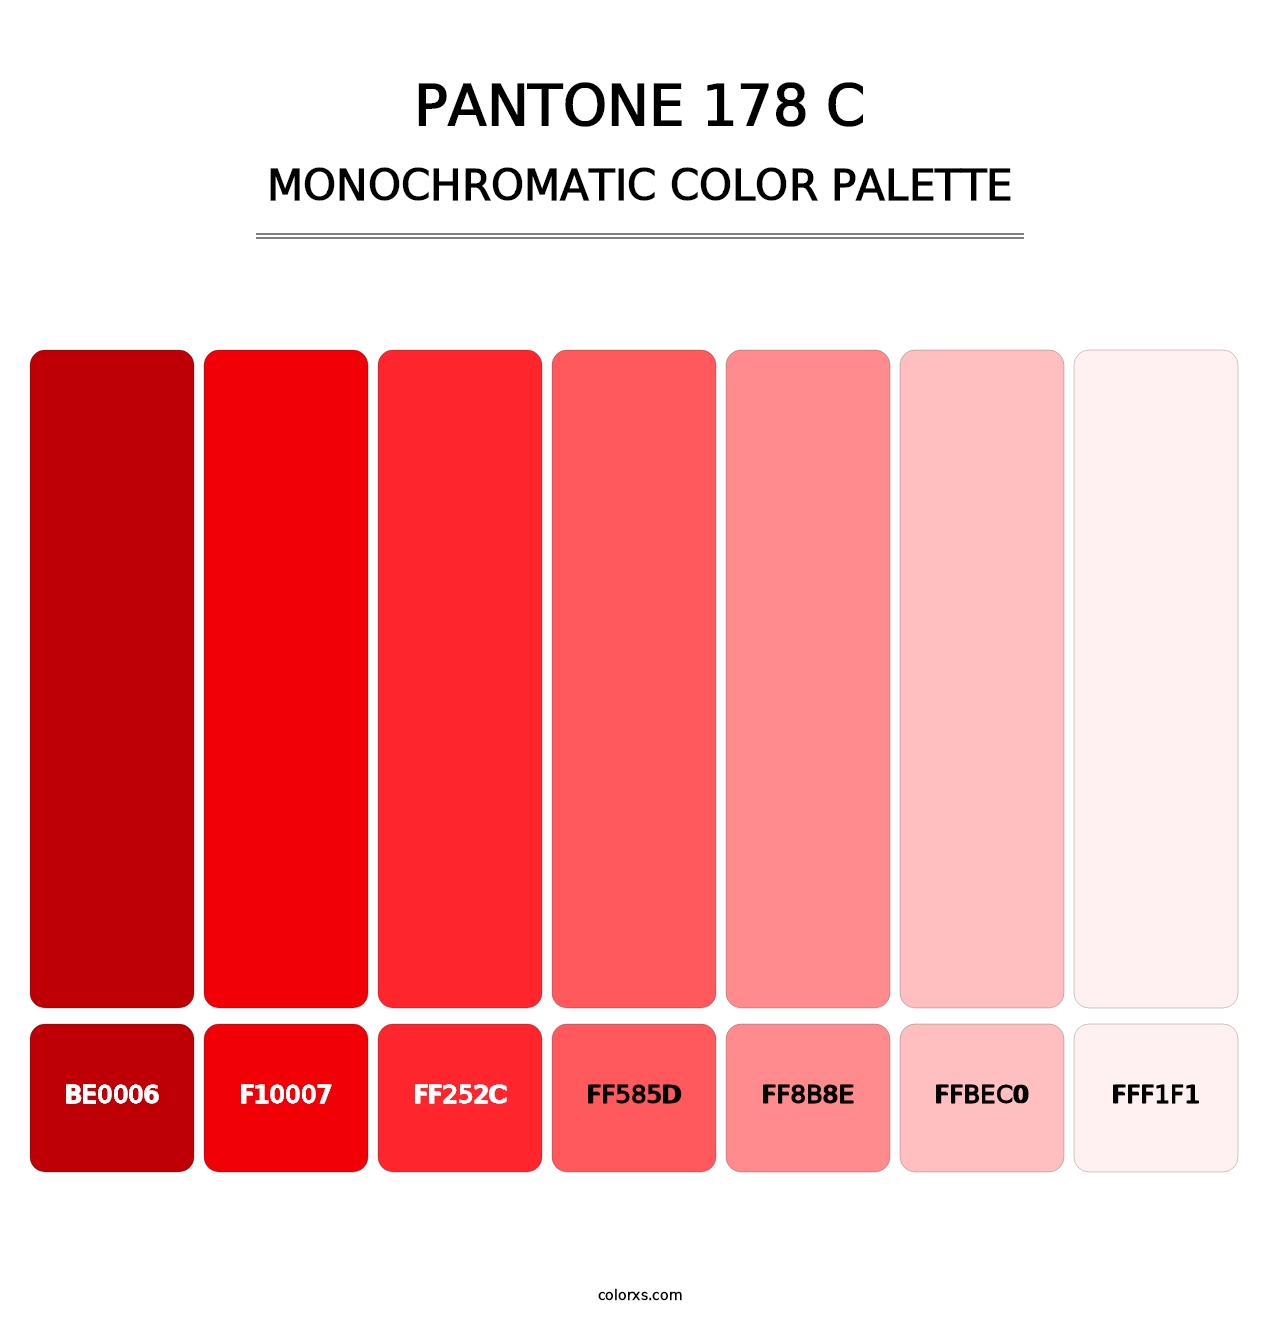 PANTONE 178 C - Monochromatic Color Palette